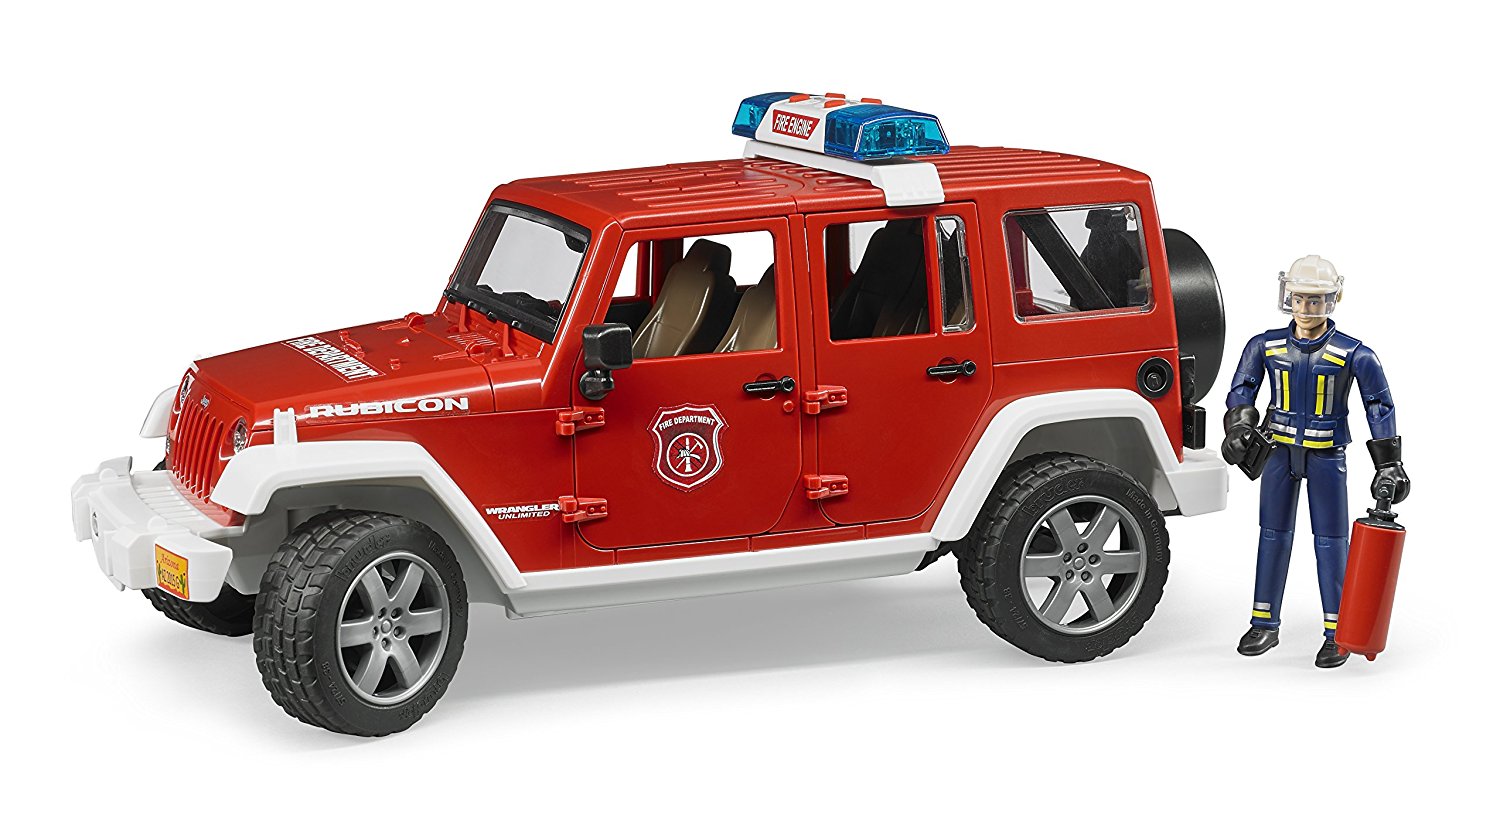 Merchandising Bruder: 2528 - Jeep Wrangler Unlimited Rubicon Pompieri, Luci E Suono E Pompiere NUOVO SIGILLATO, EDIZIONE DEL 05/04/2017 SUBITO DISPONIBILE